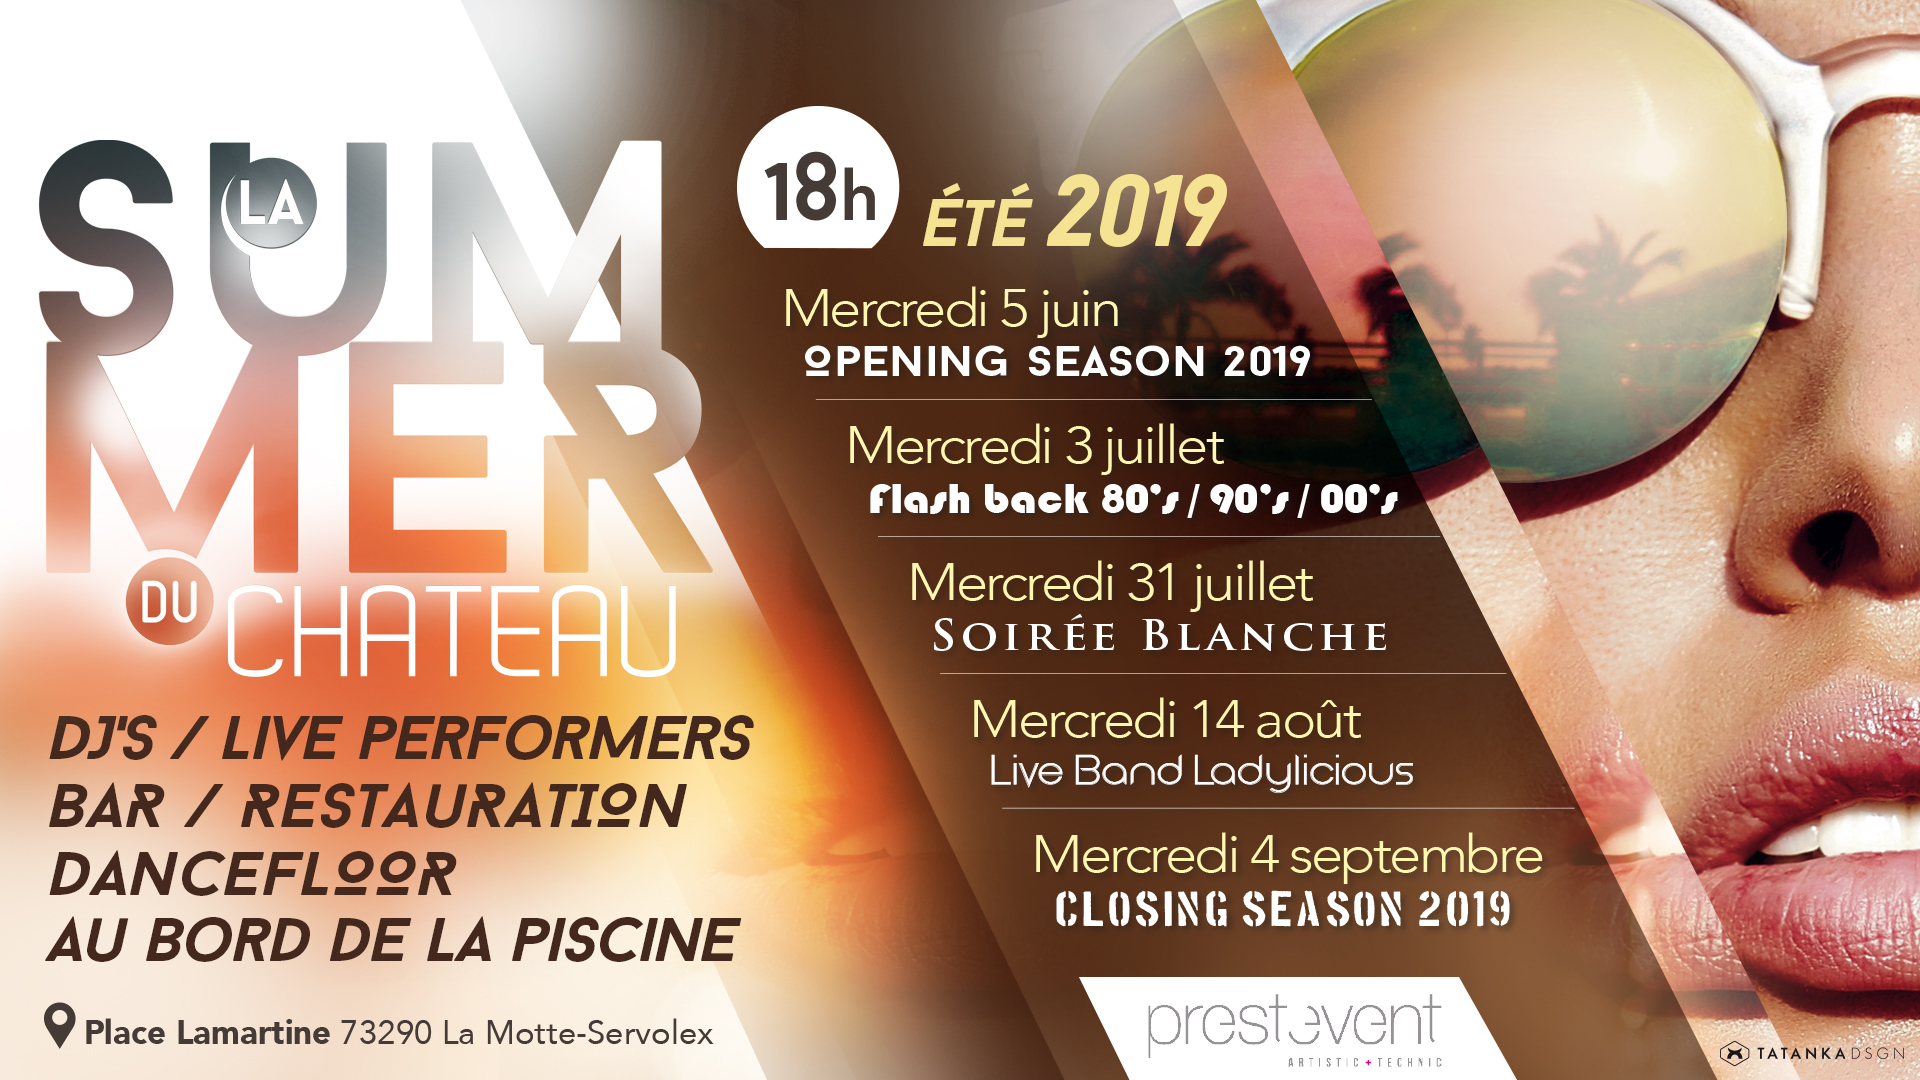 La Summer du Château – Opening Season 2019